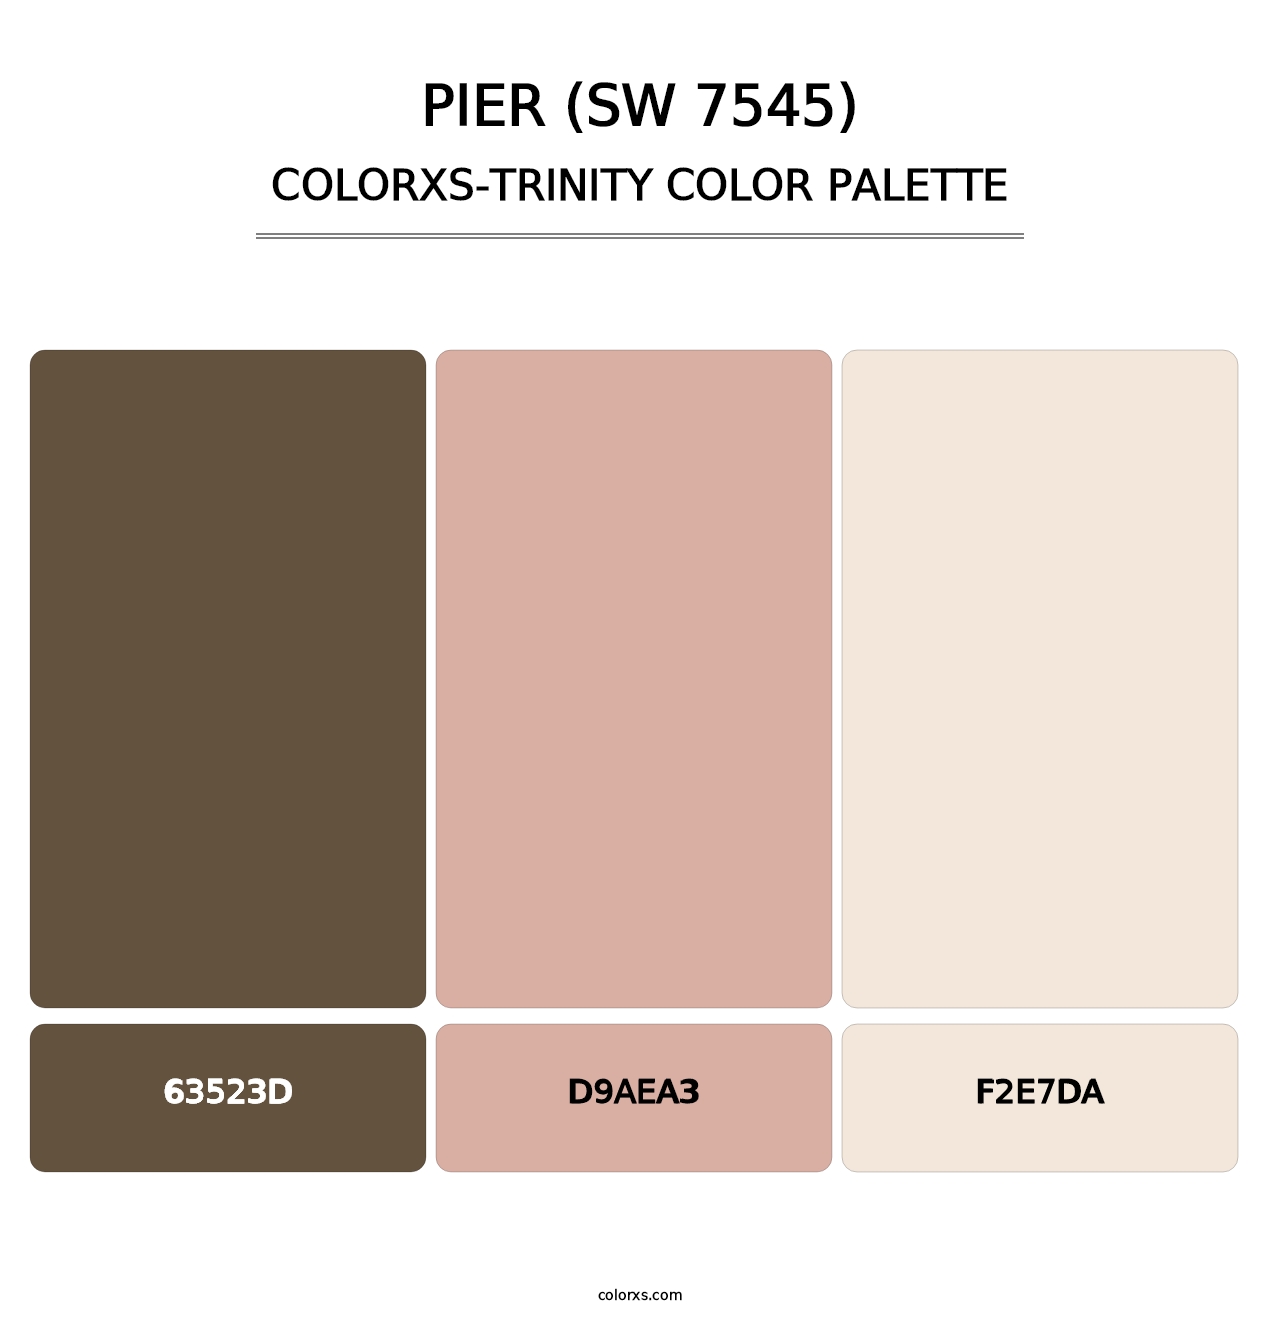 Pier (SW 7545) - Colorxs Trinity Palette